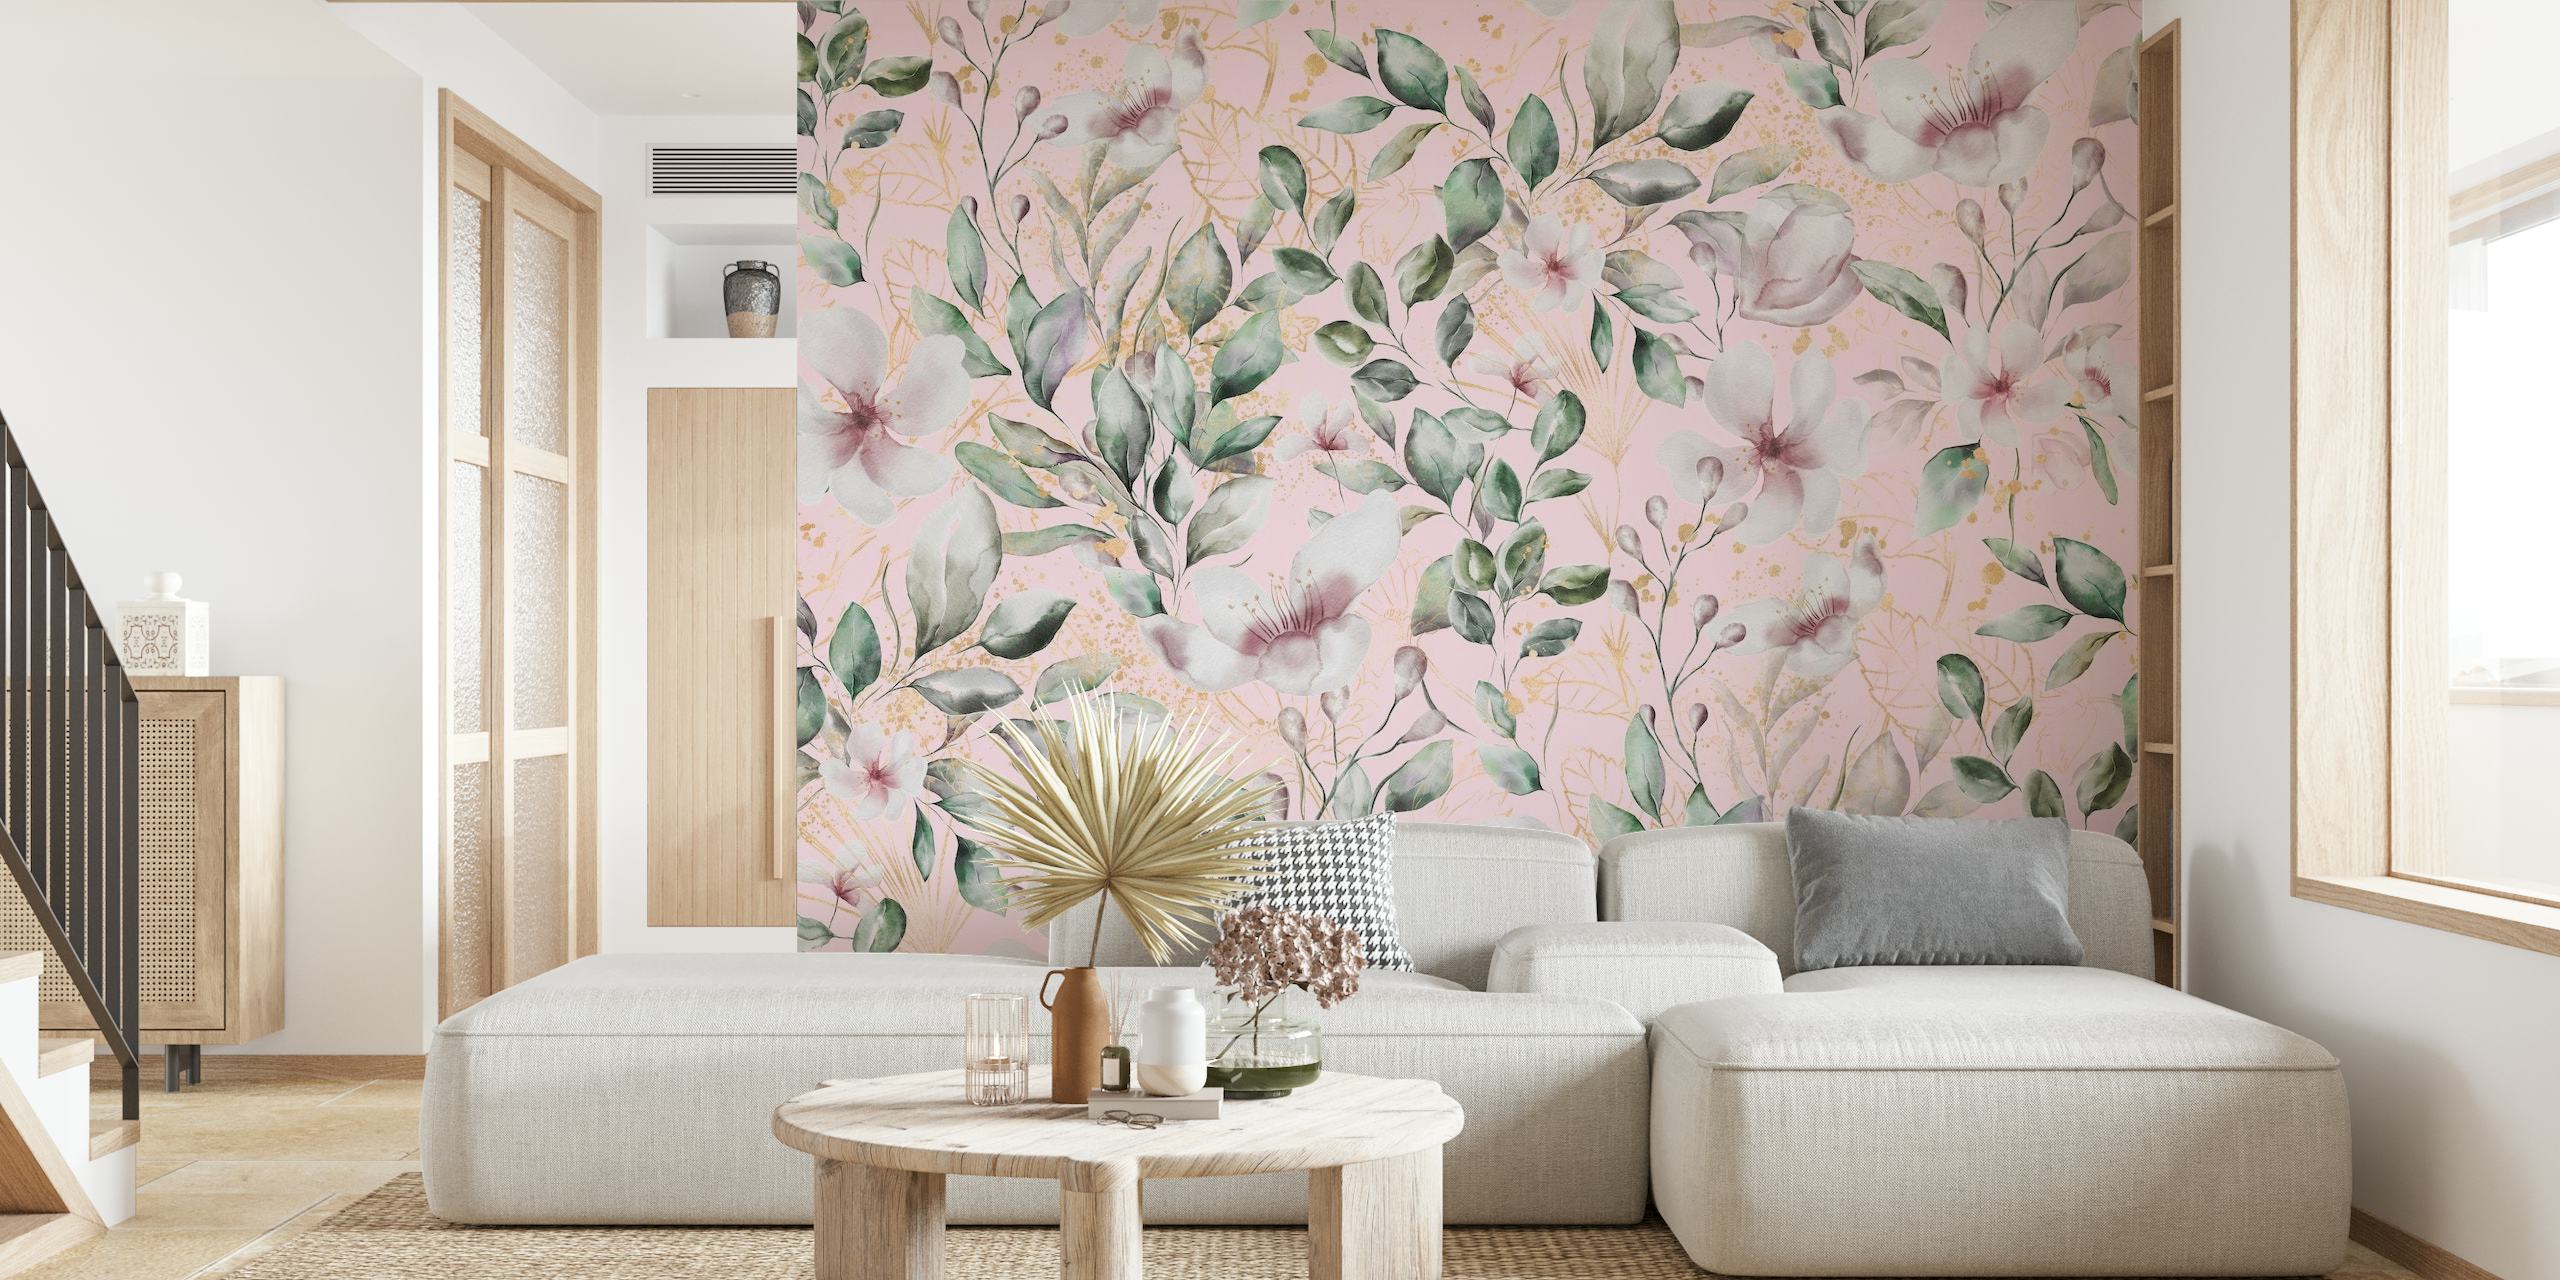 Fiori di magnolia ad acquerello su un murale con sfondo rosa tenue